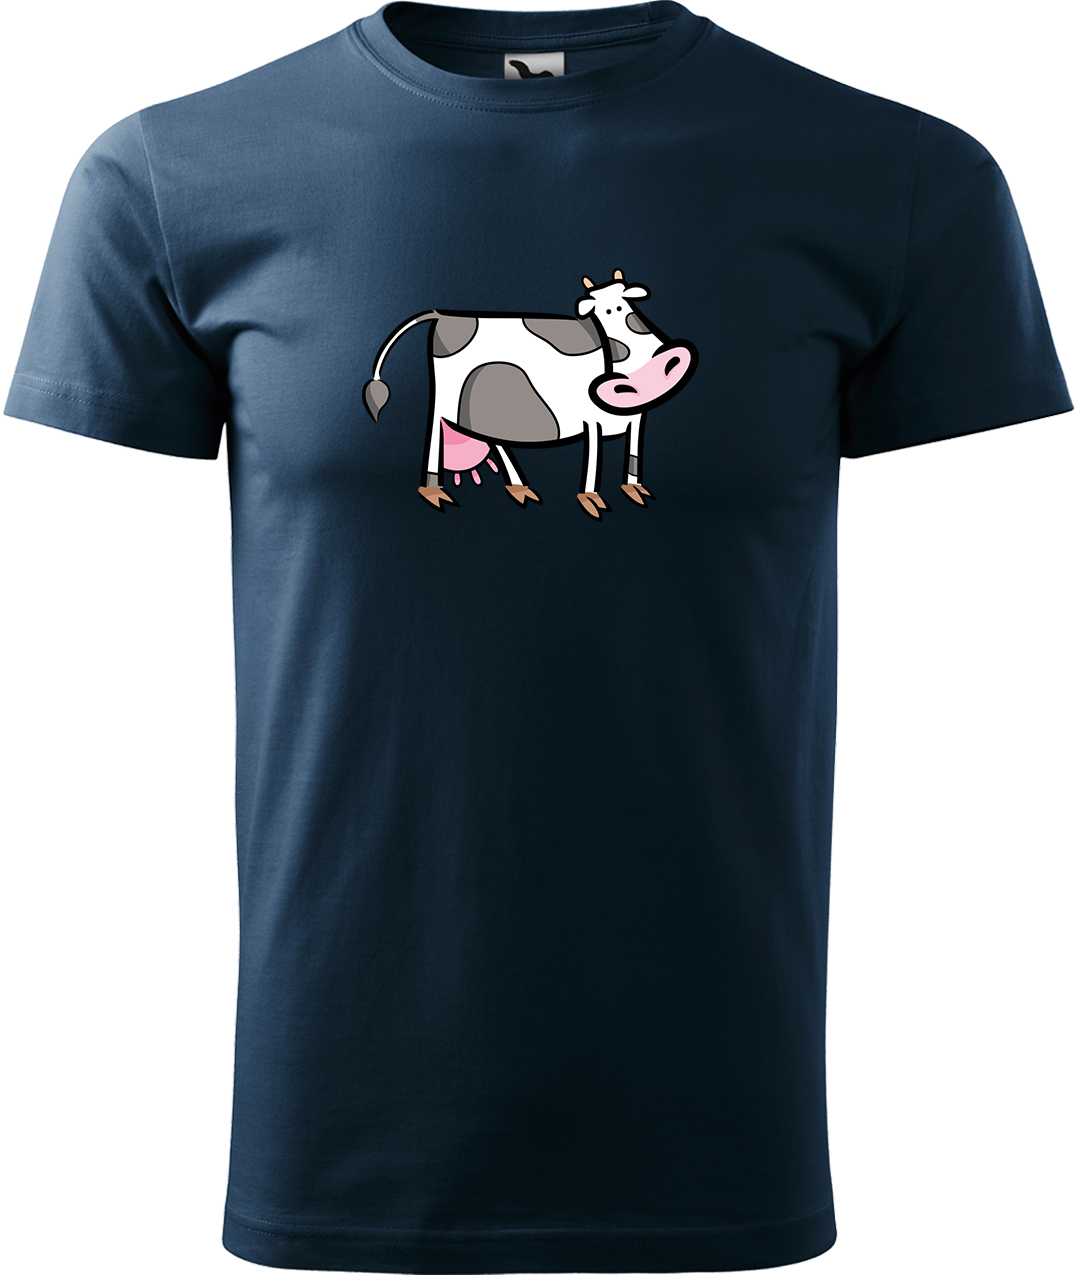 Pánské tričko s krávou - Kravička Velikost: M, Barva: Námořní modrá (02), Střih: pánský